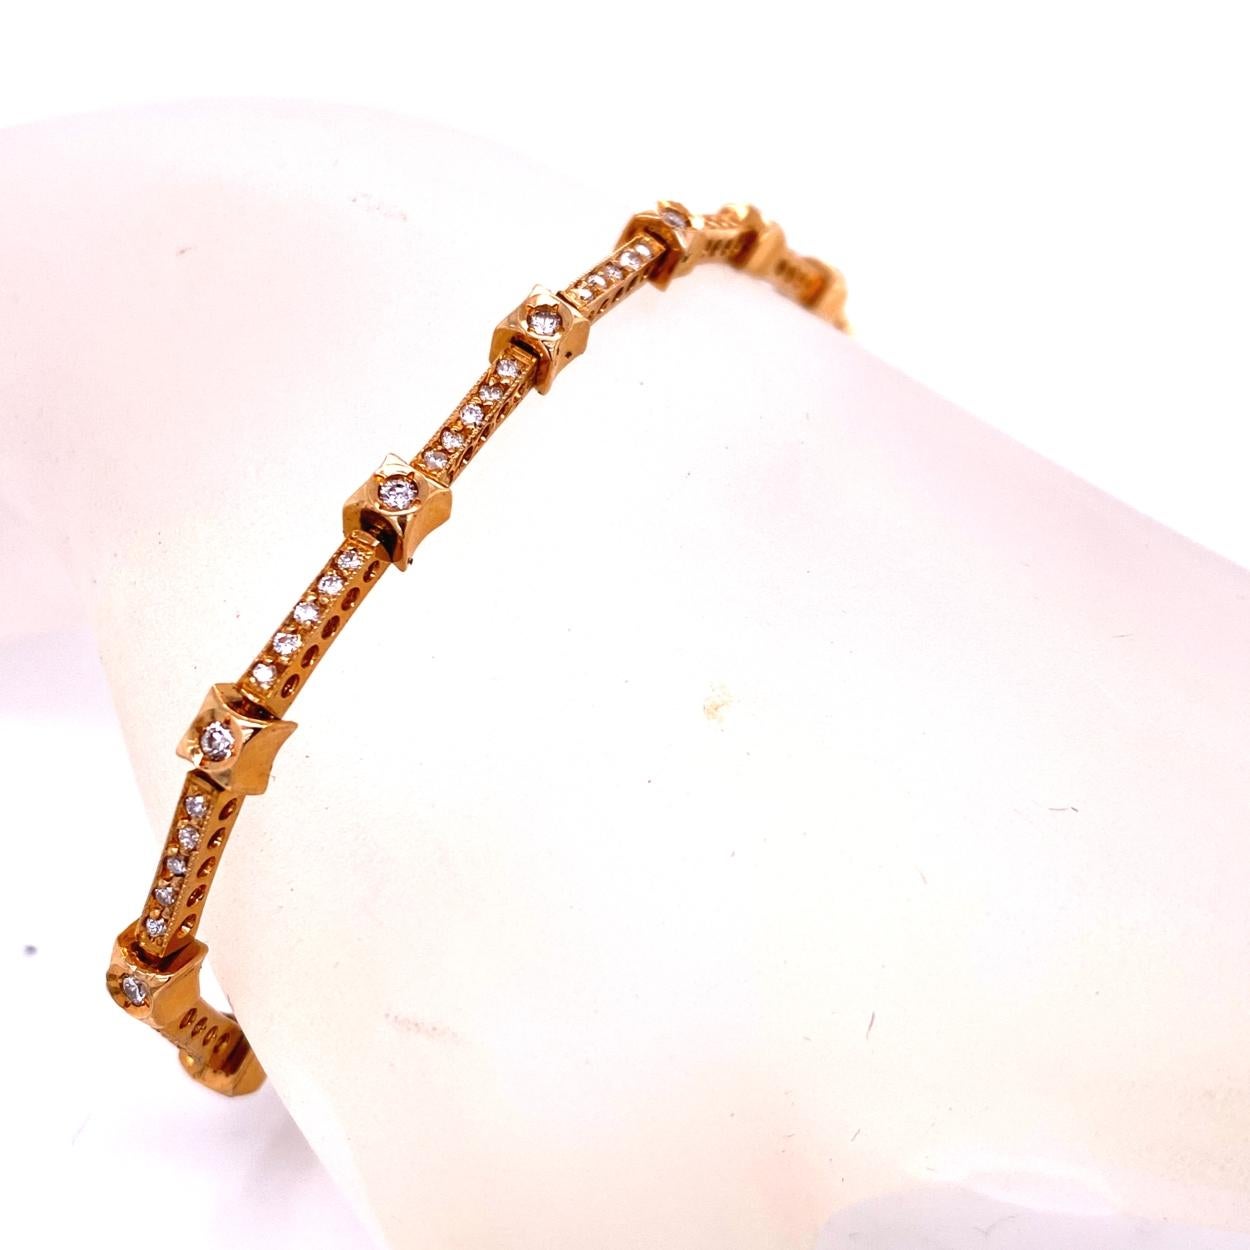 Dieses Diamantarmband besteht aus 13 Gliedern, die sich aus 14 mit 1,6 mm großen runden Brillanten besetzten Lünetten und 13 mit 65 1 mm großen runden Brillanten besetzten Pave-Stegen zusammensetzen. Das Armband ist aus 14 Karat Gelbgold gefertigt,